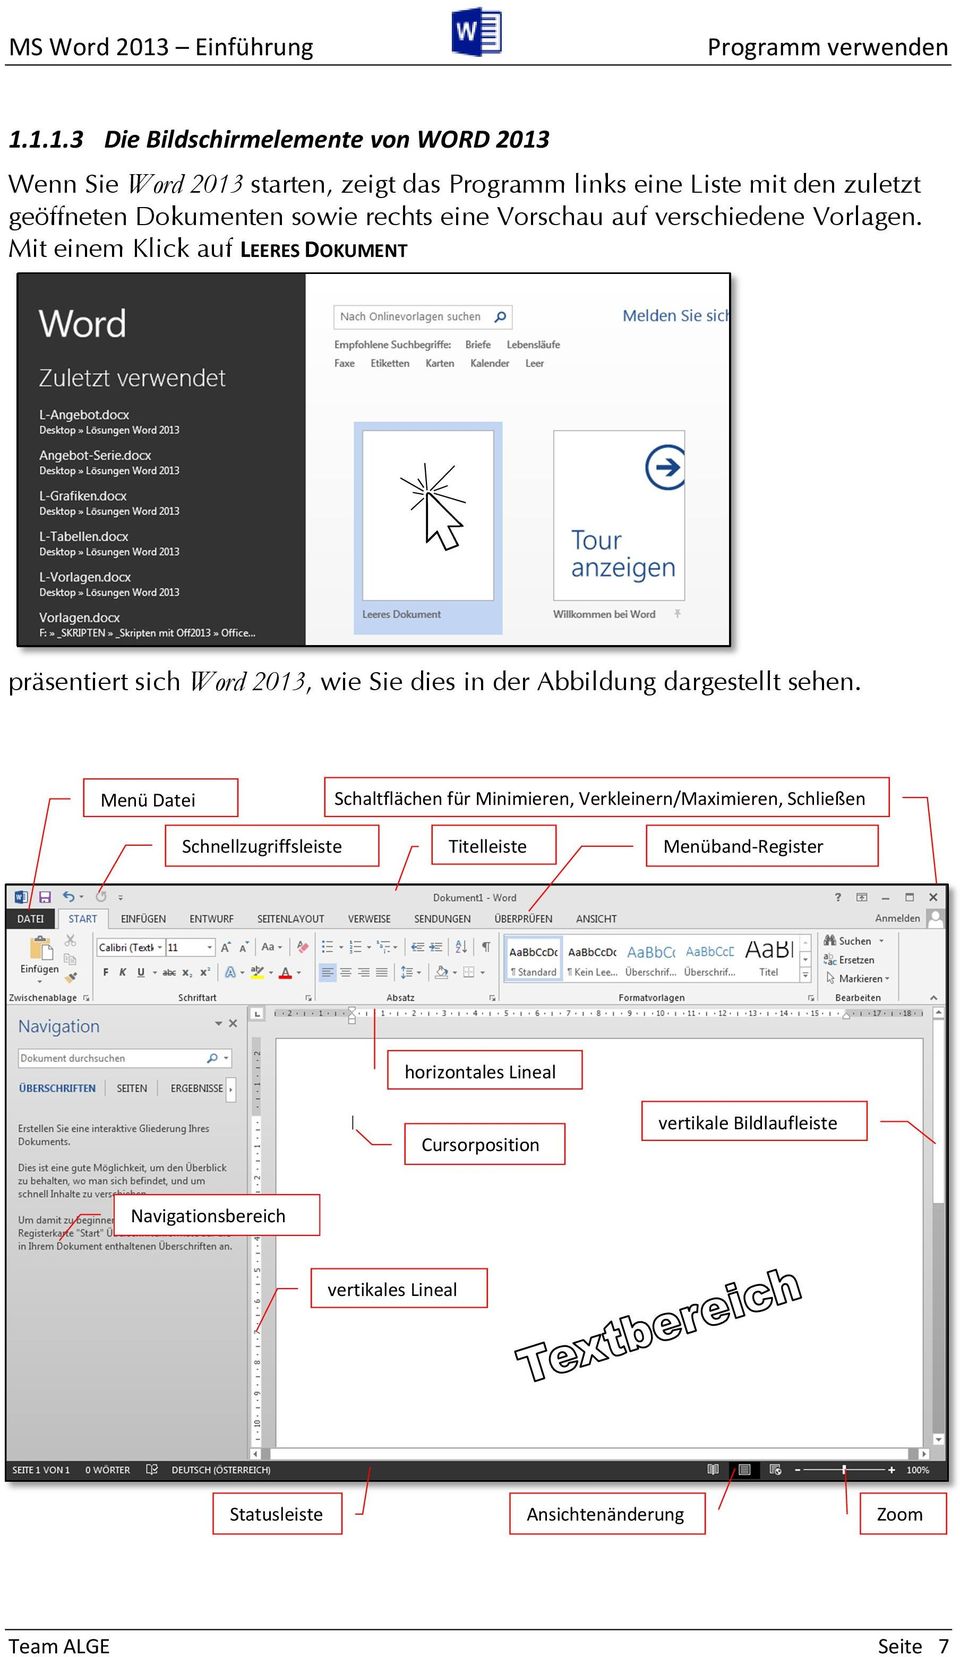 1.1.3 Die Bildschirmelemente von WORD 2013 Wenn Sie Word 2013 starten, zeigt das Programm links eine Liste mit den zuletzt geöffneten Dokumenten sowie rechts